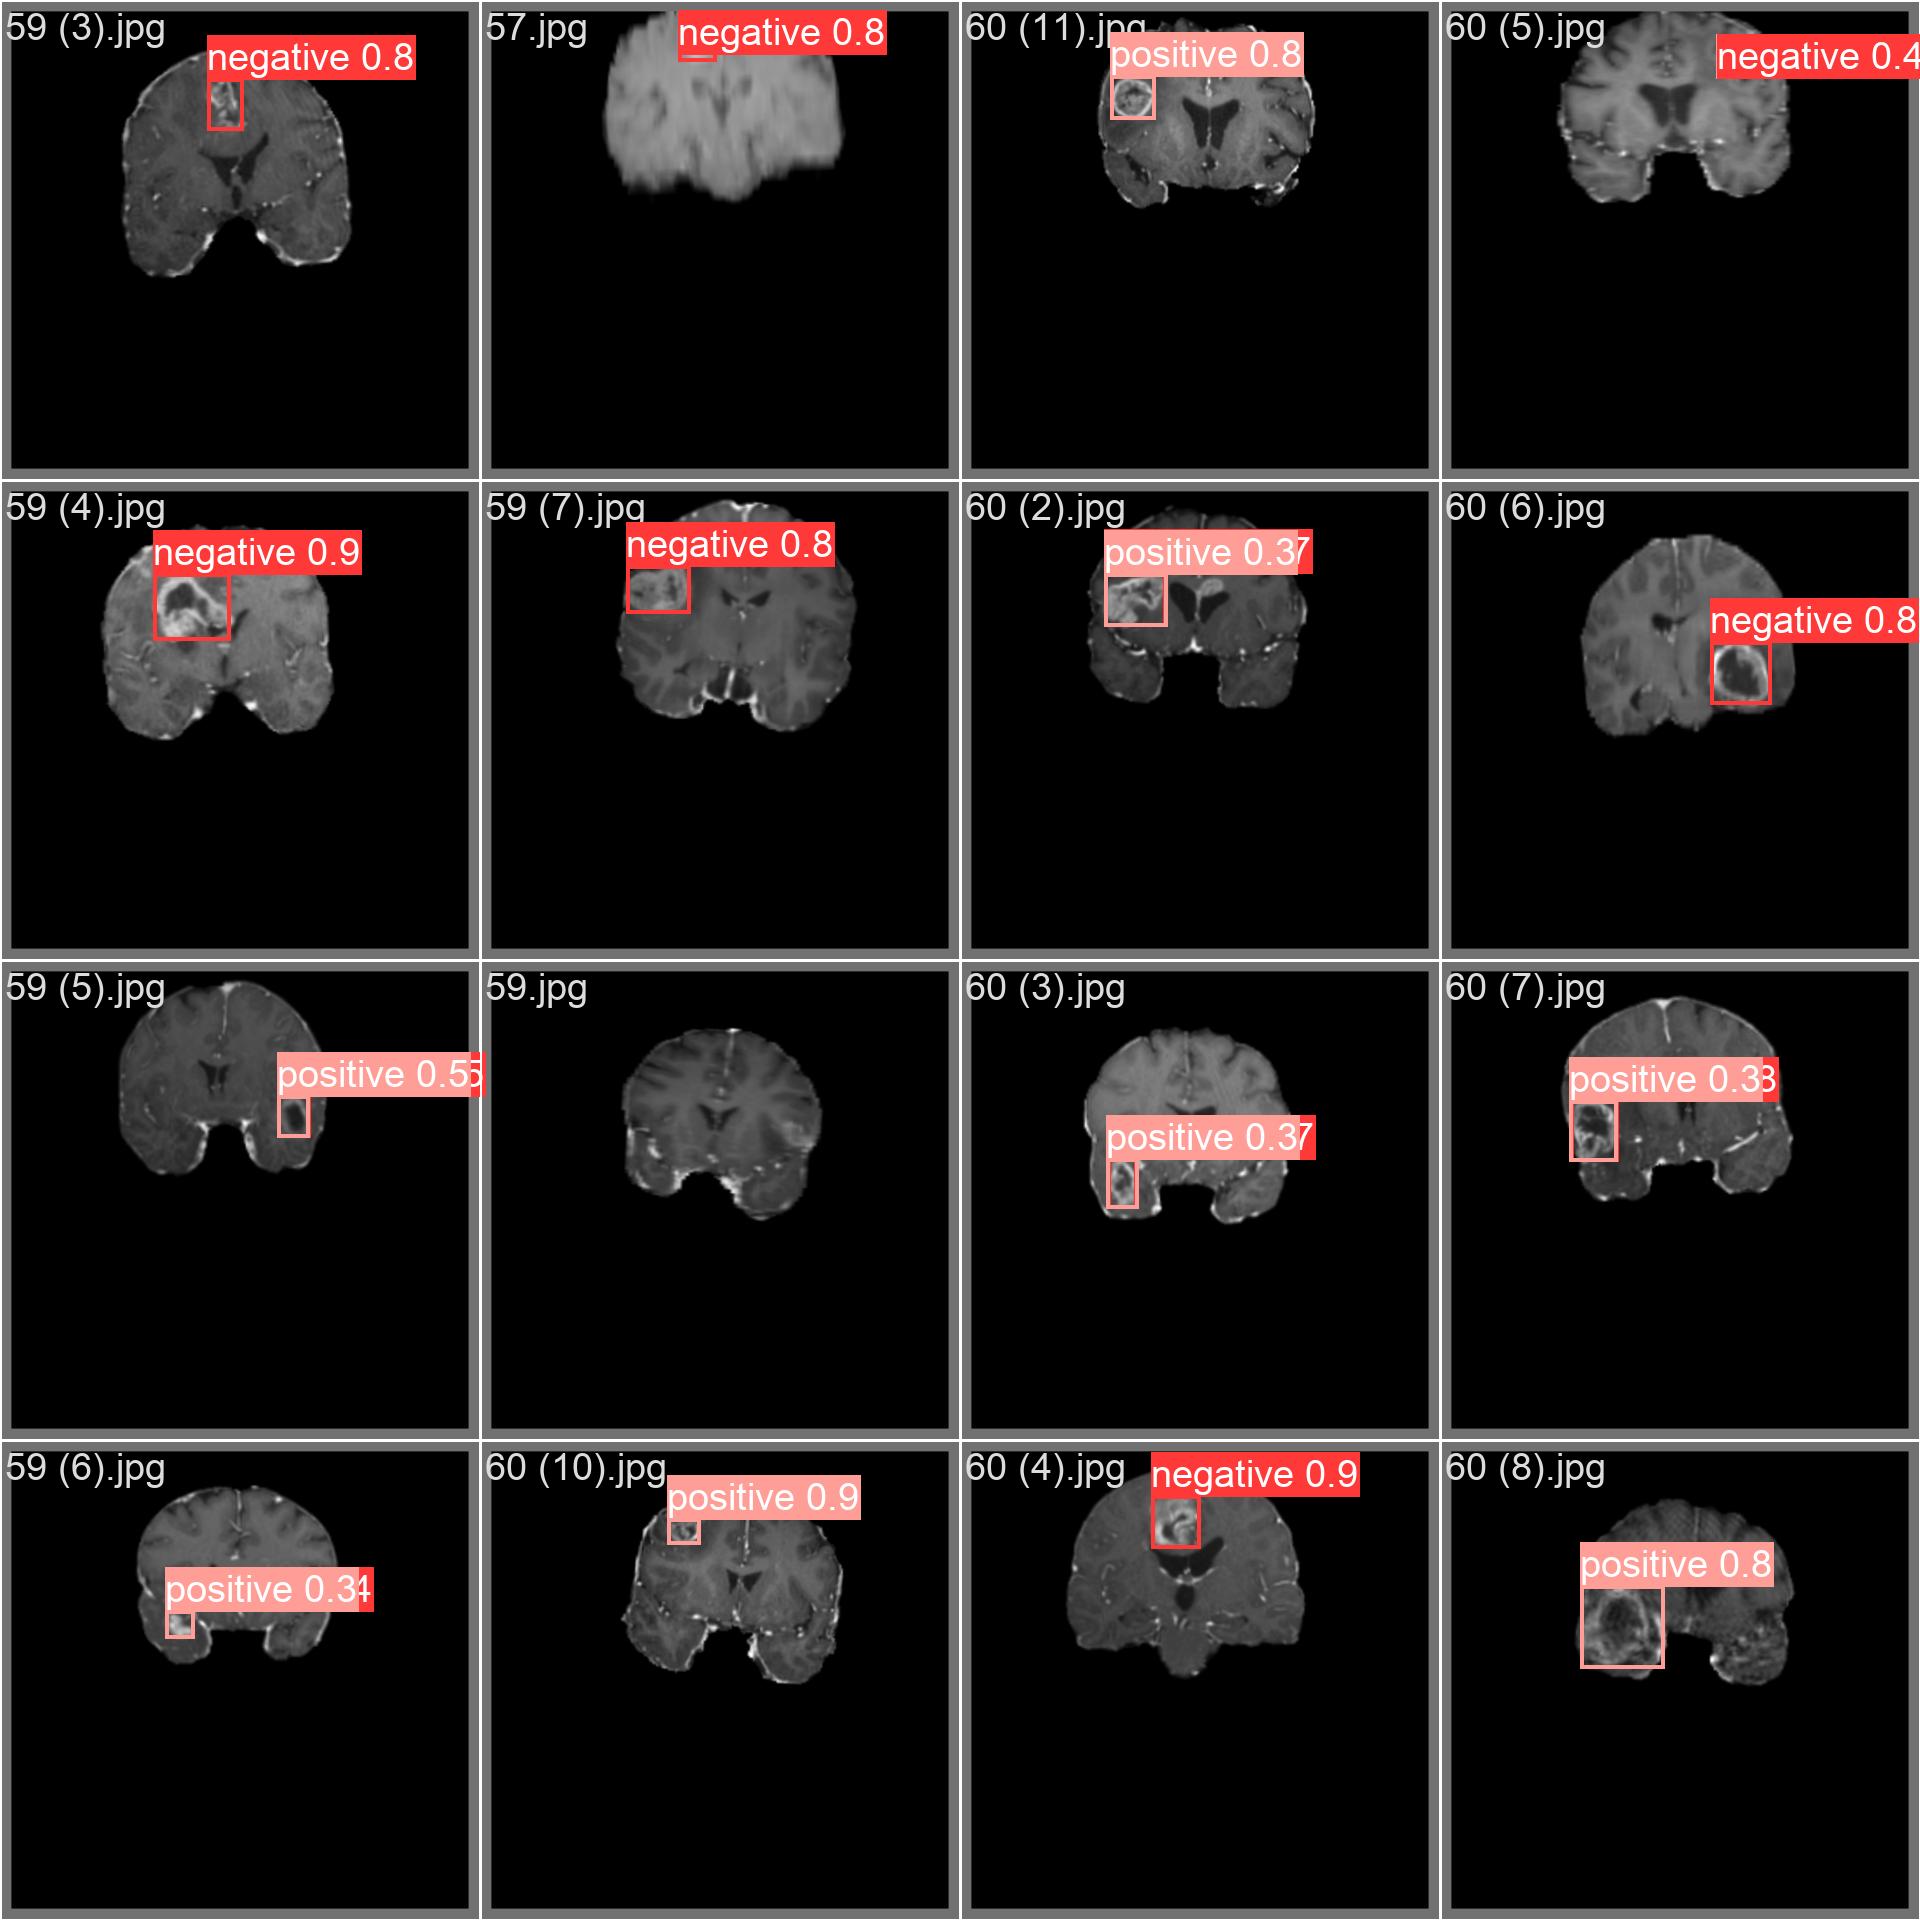 Image d'échantillon du jeu de données sur les tumeurs cérébrales